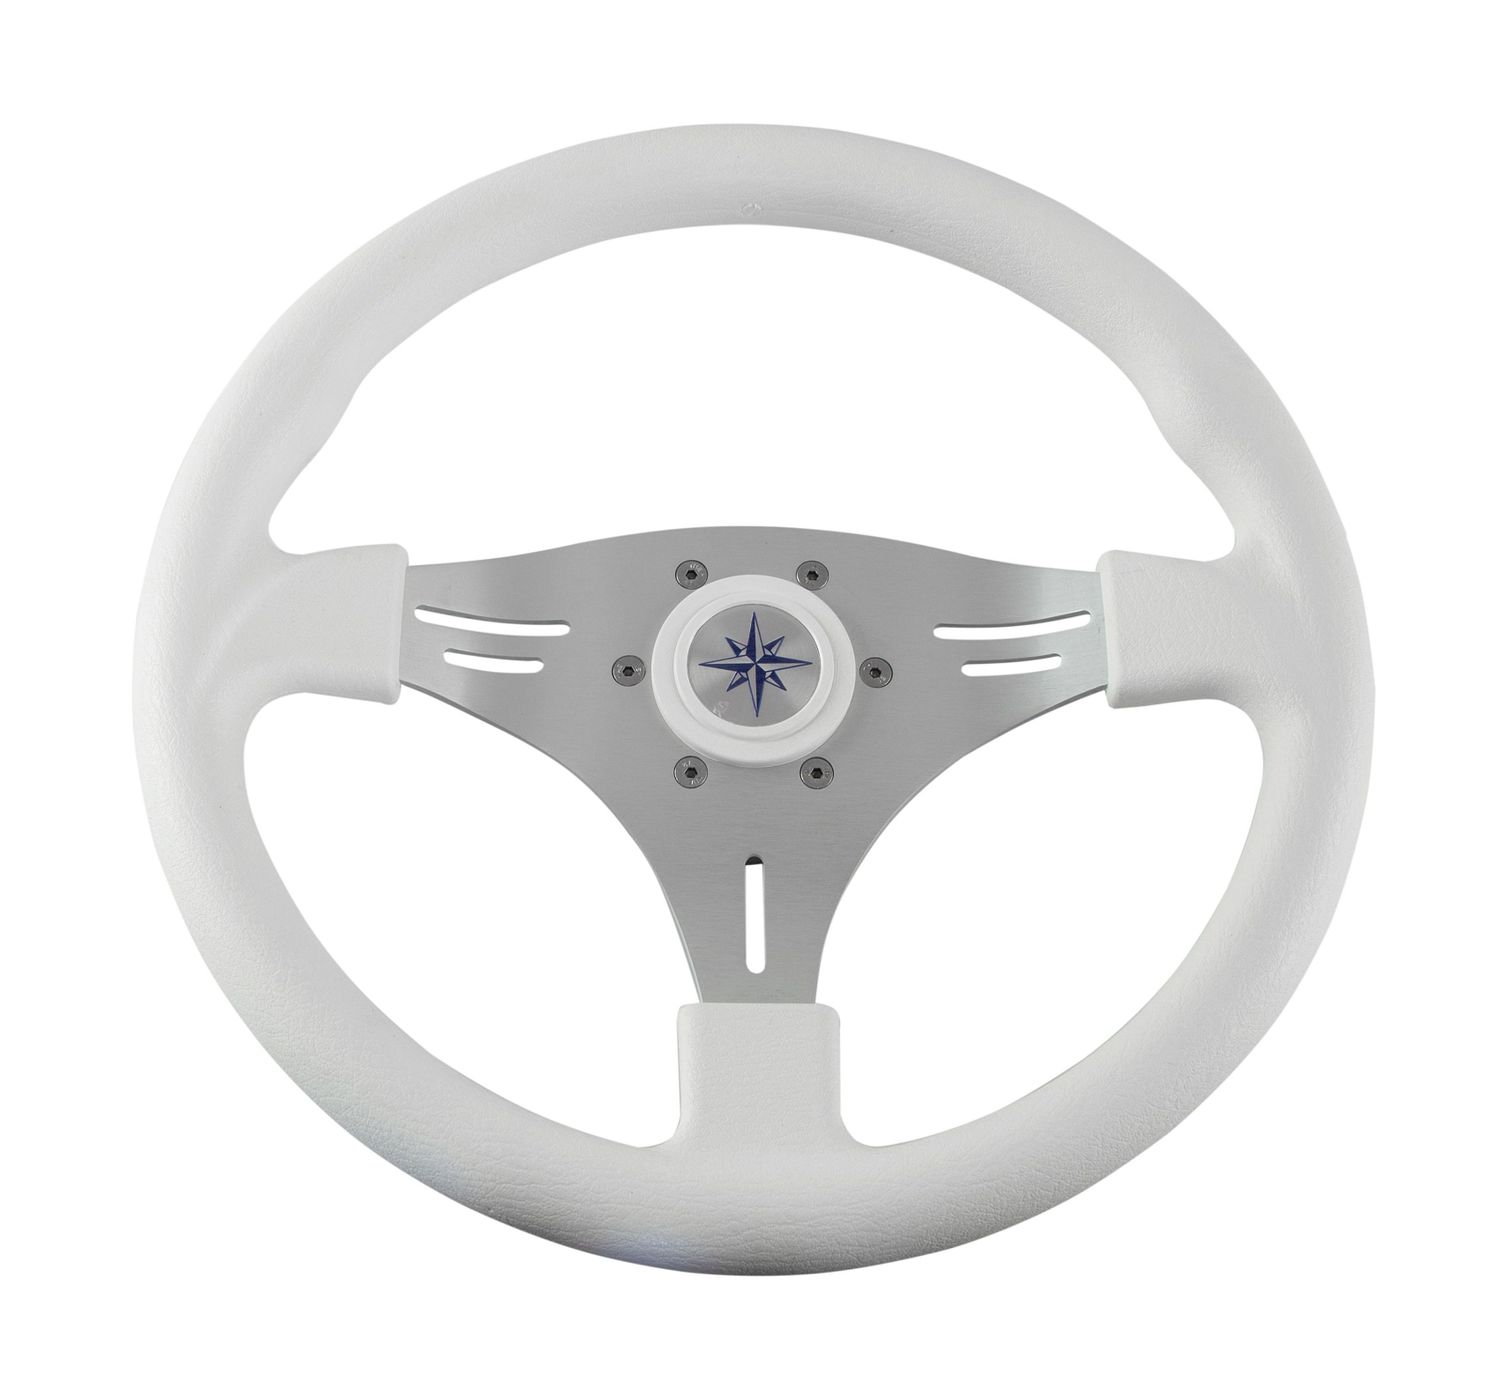 Рулевое колесо MANTA обод белый, спицы серебряные д. 355 мм VN70551-08 рулевое колесо leader wood деревянный обод серебряные спицы д 360 мм vn7360 33